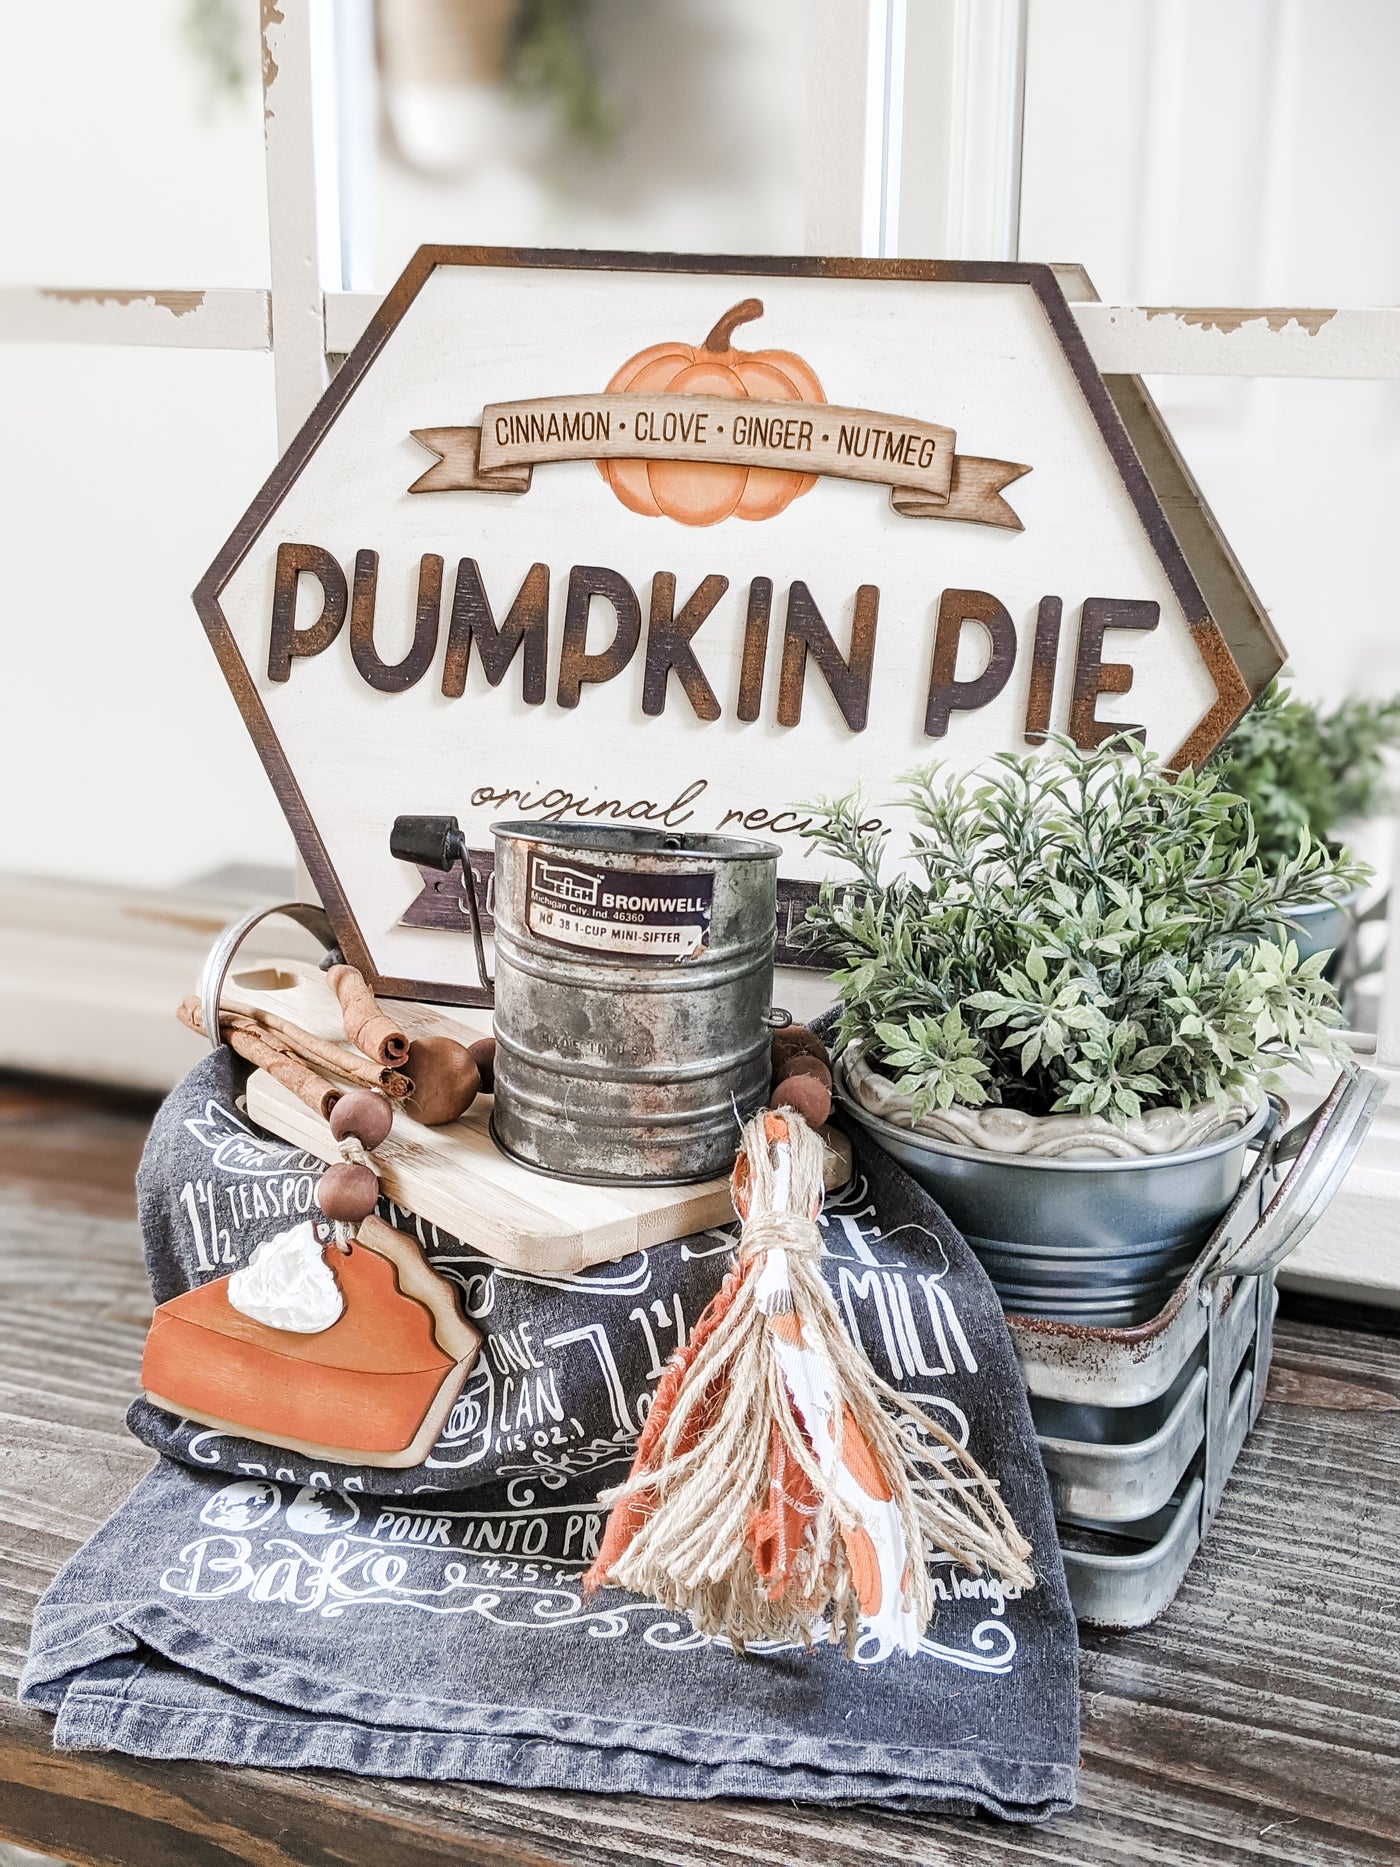 Pumpkin Pie Sign Blank